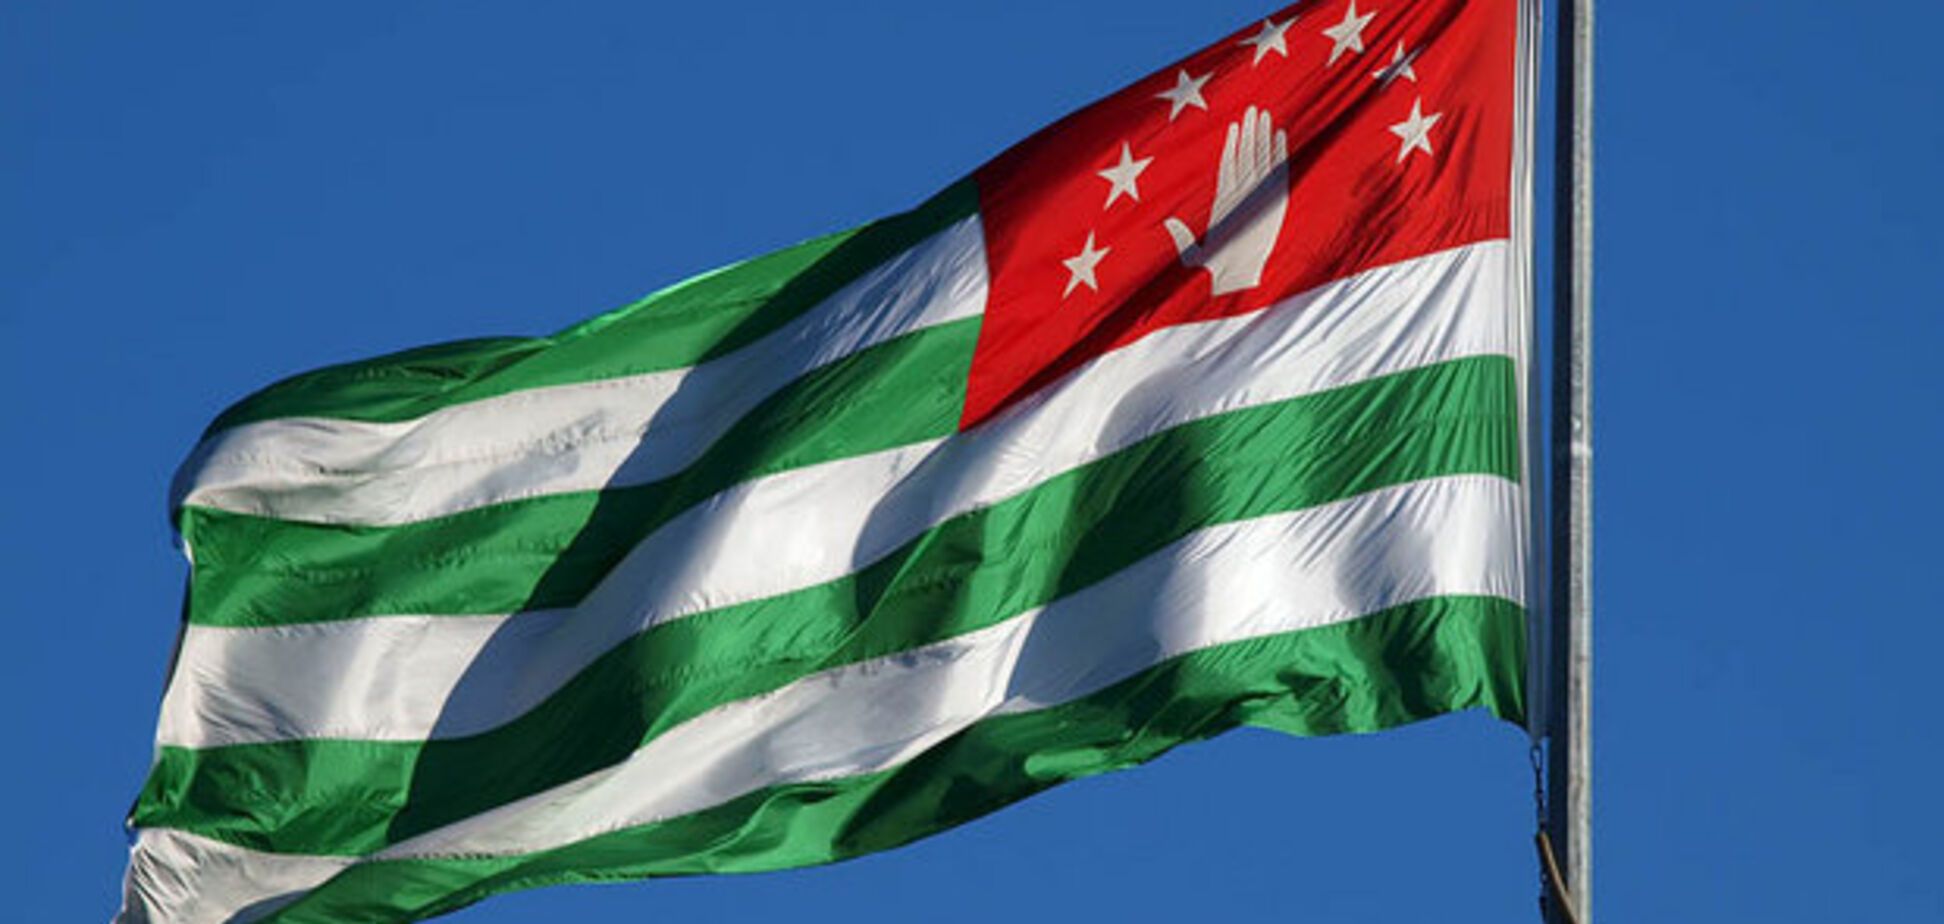 Ще одна країна визнала незалежність Абхазії та Південної Осетії